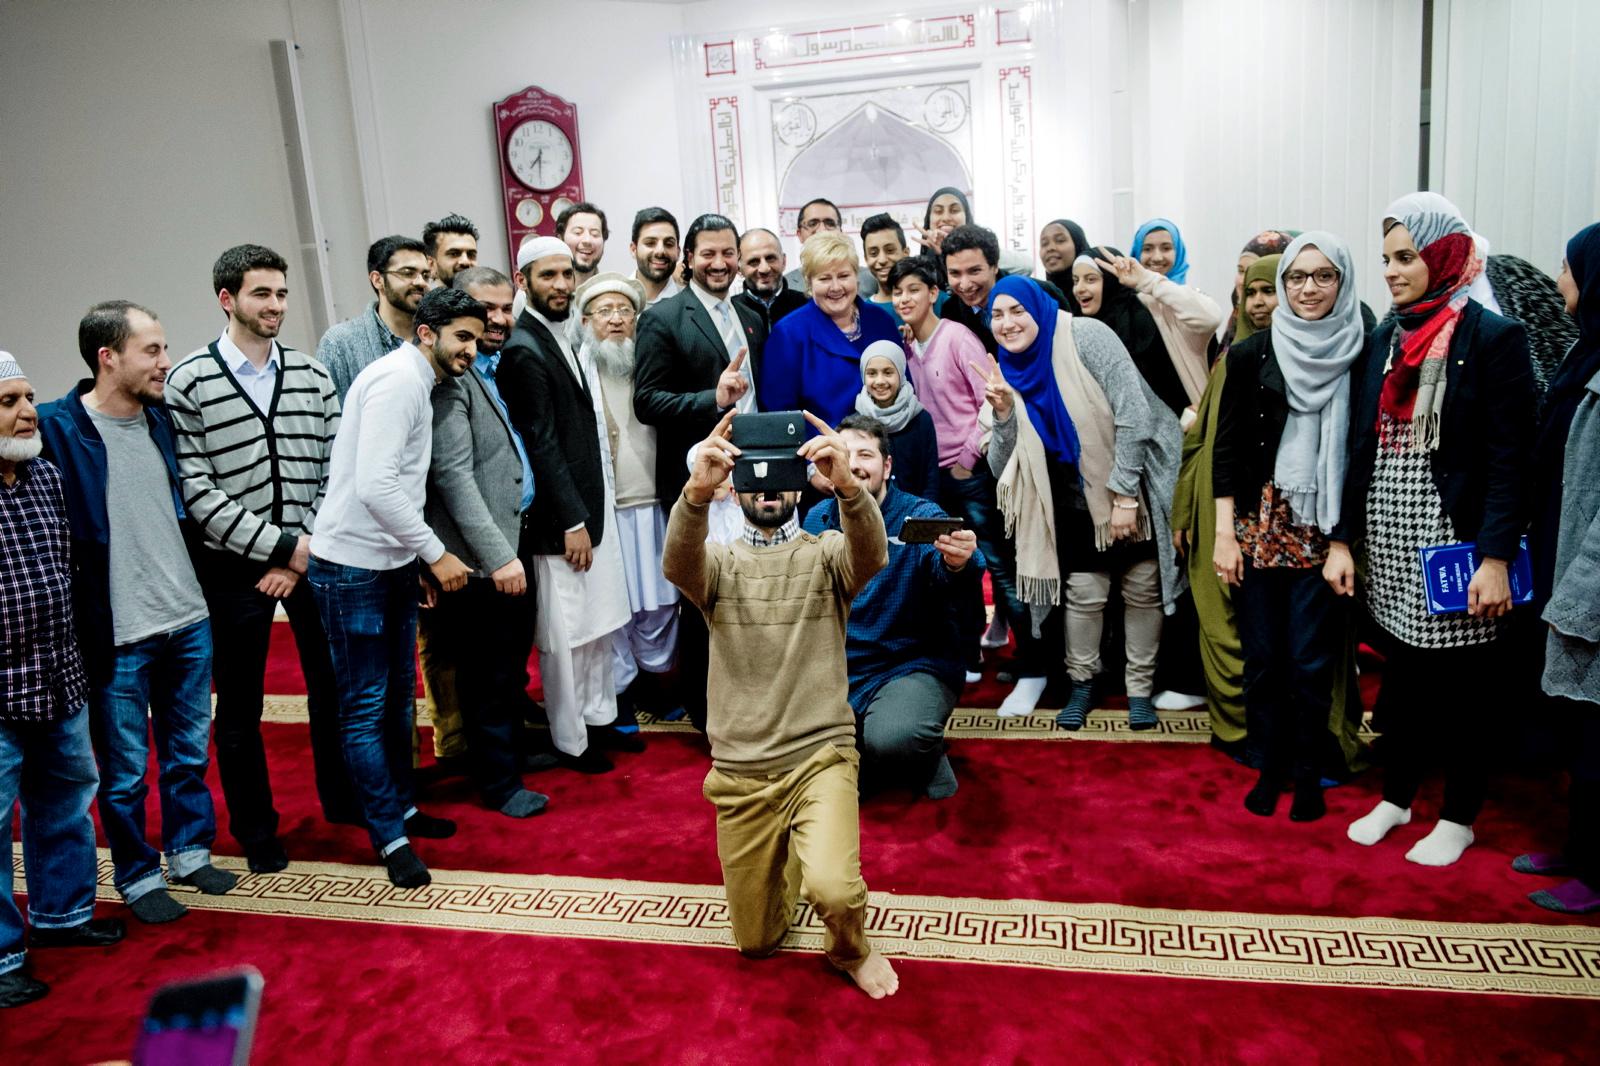 Statsminister Erna Solberg (H) stilte opp på en "selfie" sammen med representanter for muslimsk ungdom i Islamic Cultural Centre sin moské ved Tøyenbekken i Oslo tirsdag kveld.